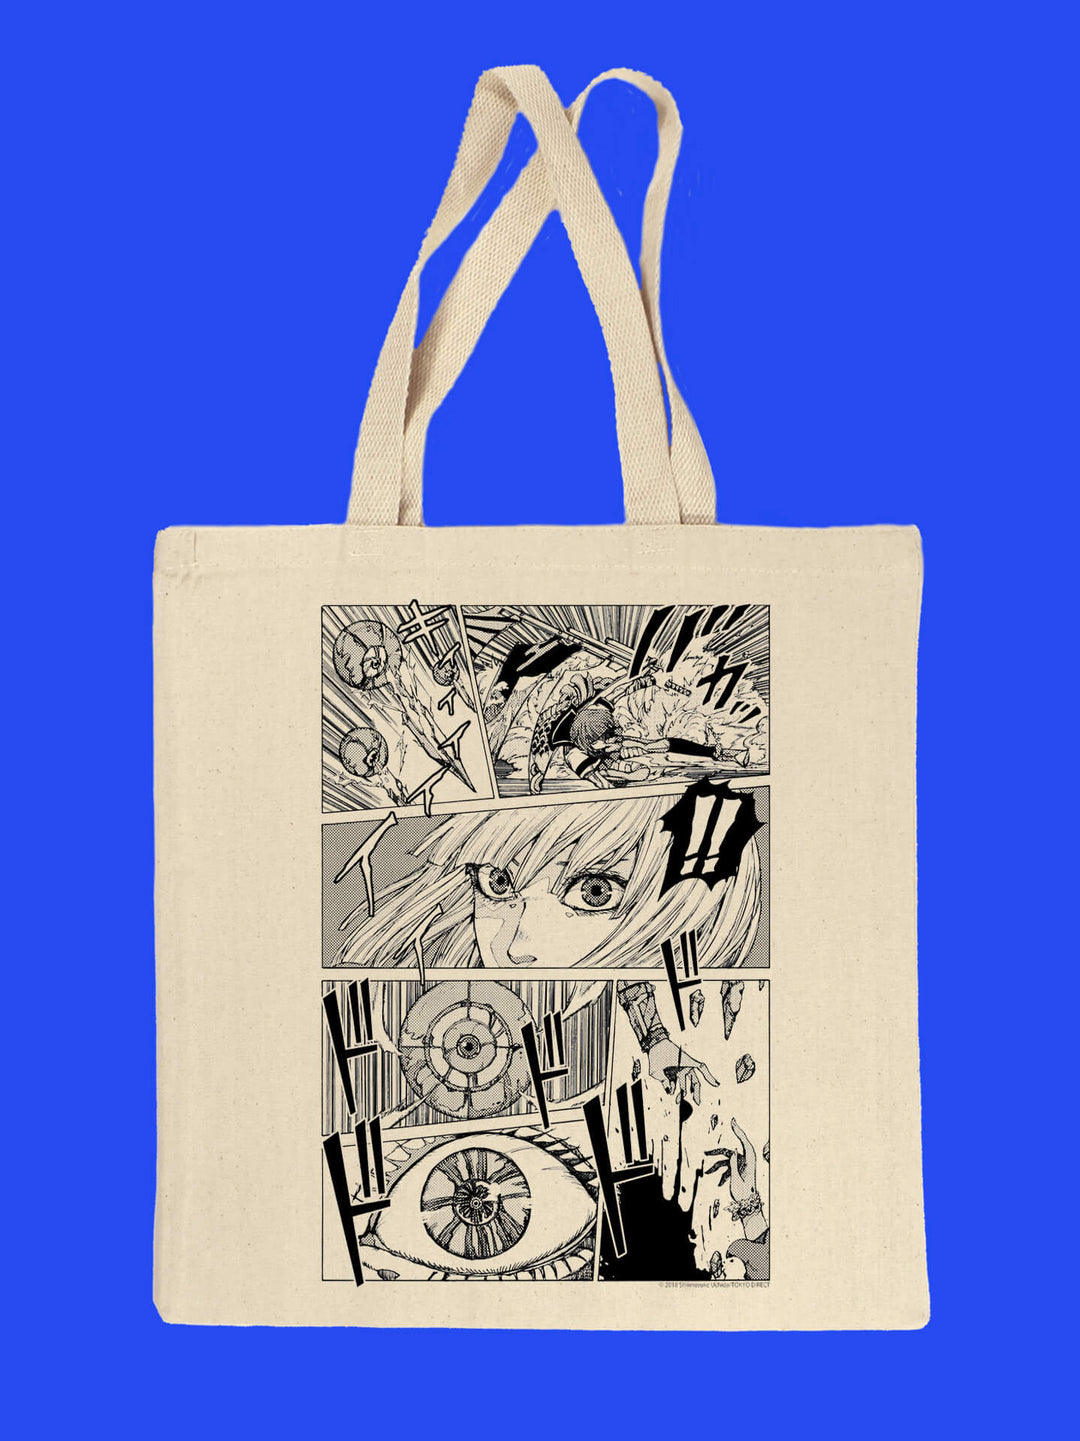 Anime manga action comic panels on canvas tote bag designed by Japanese artist Shinnosuke Uchida.